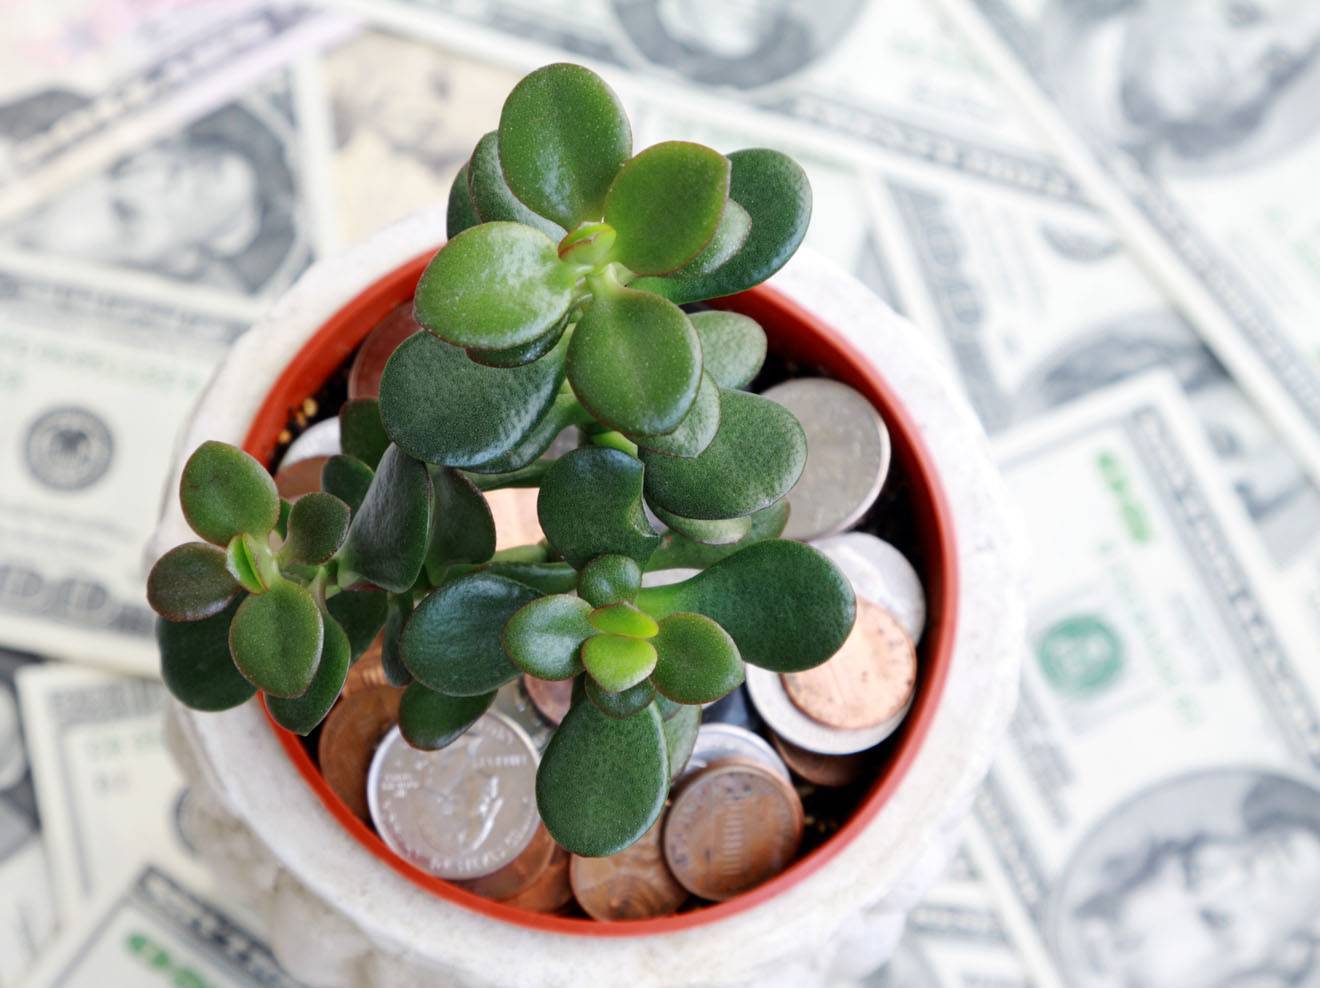 10 комнатных растений на удачу, деньги и семейное счастье